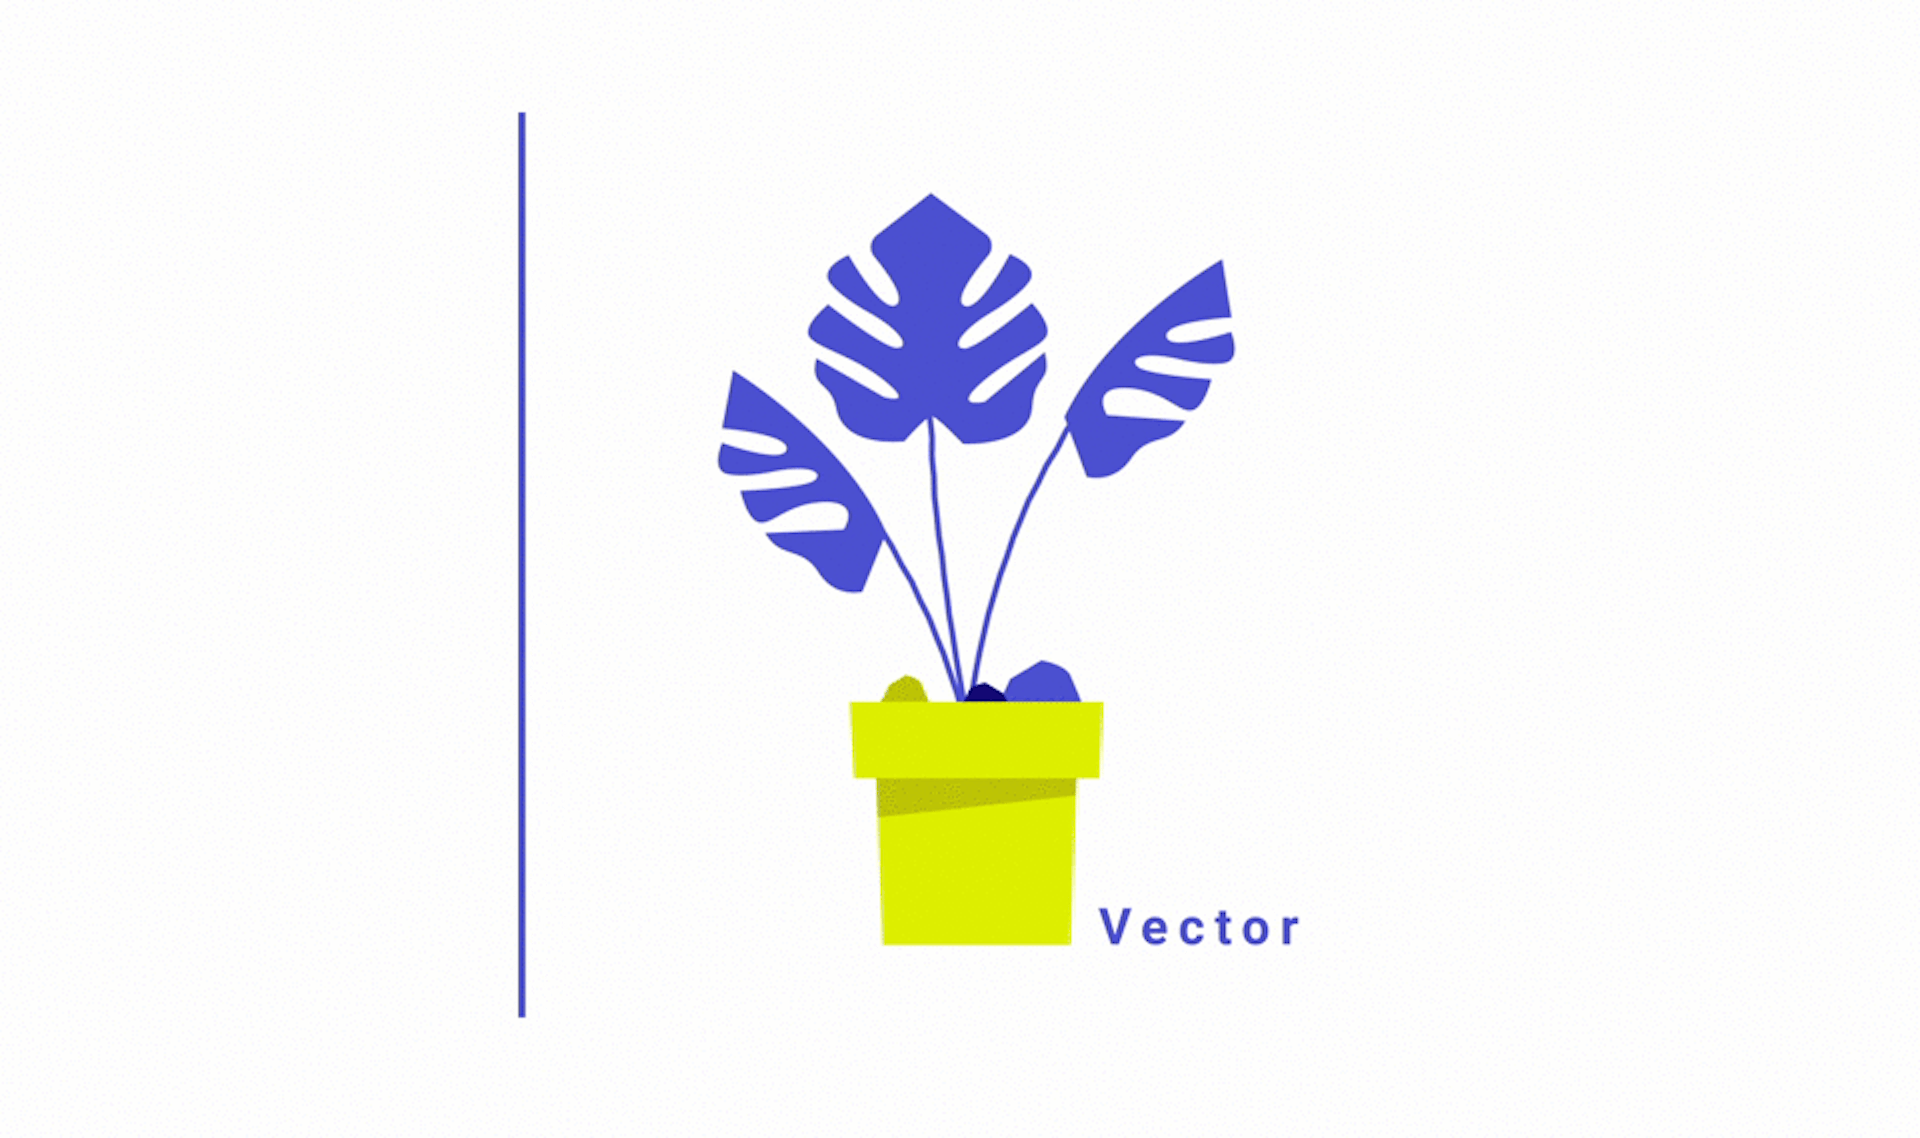 GIF animation de texturing et de vectorisation d'une illustration de plante by Studio Katra.